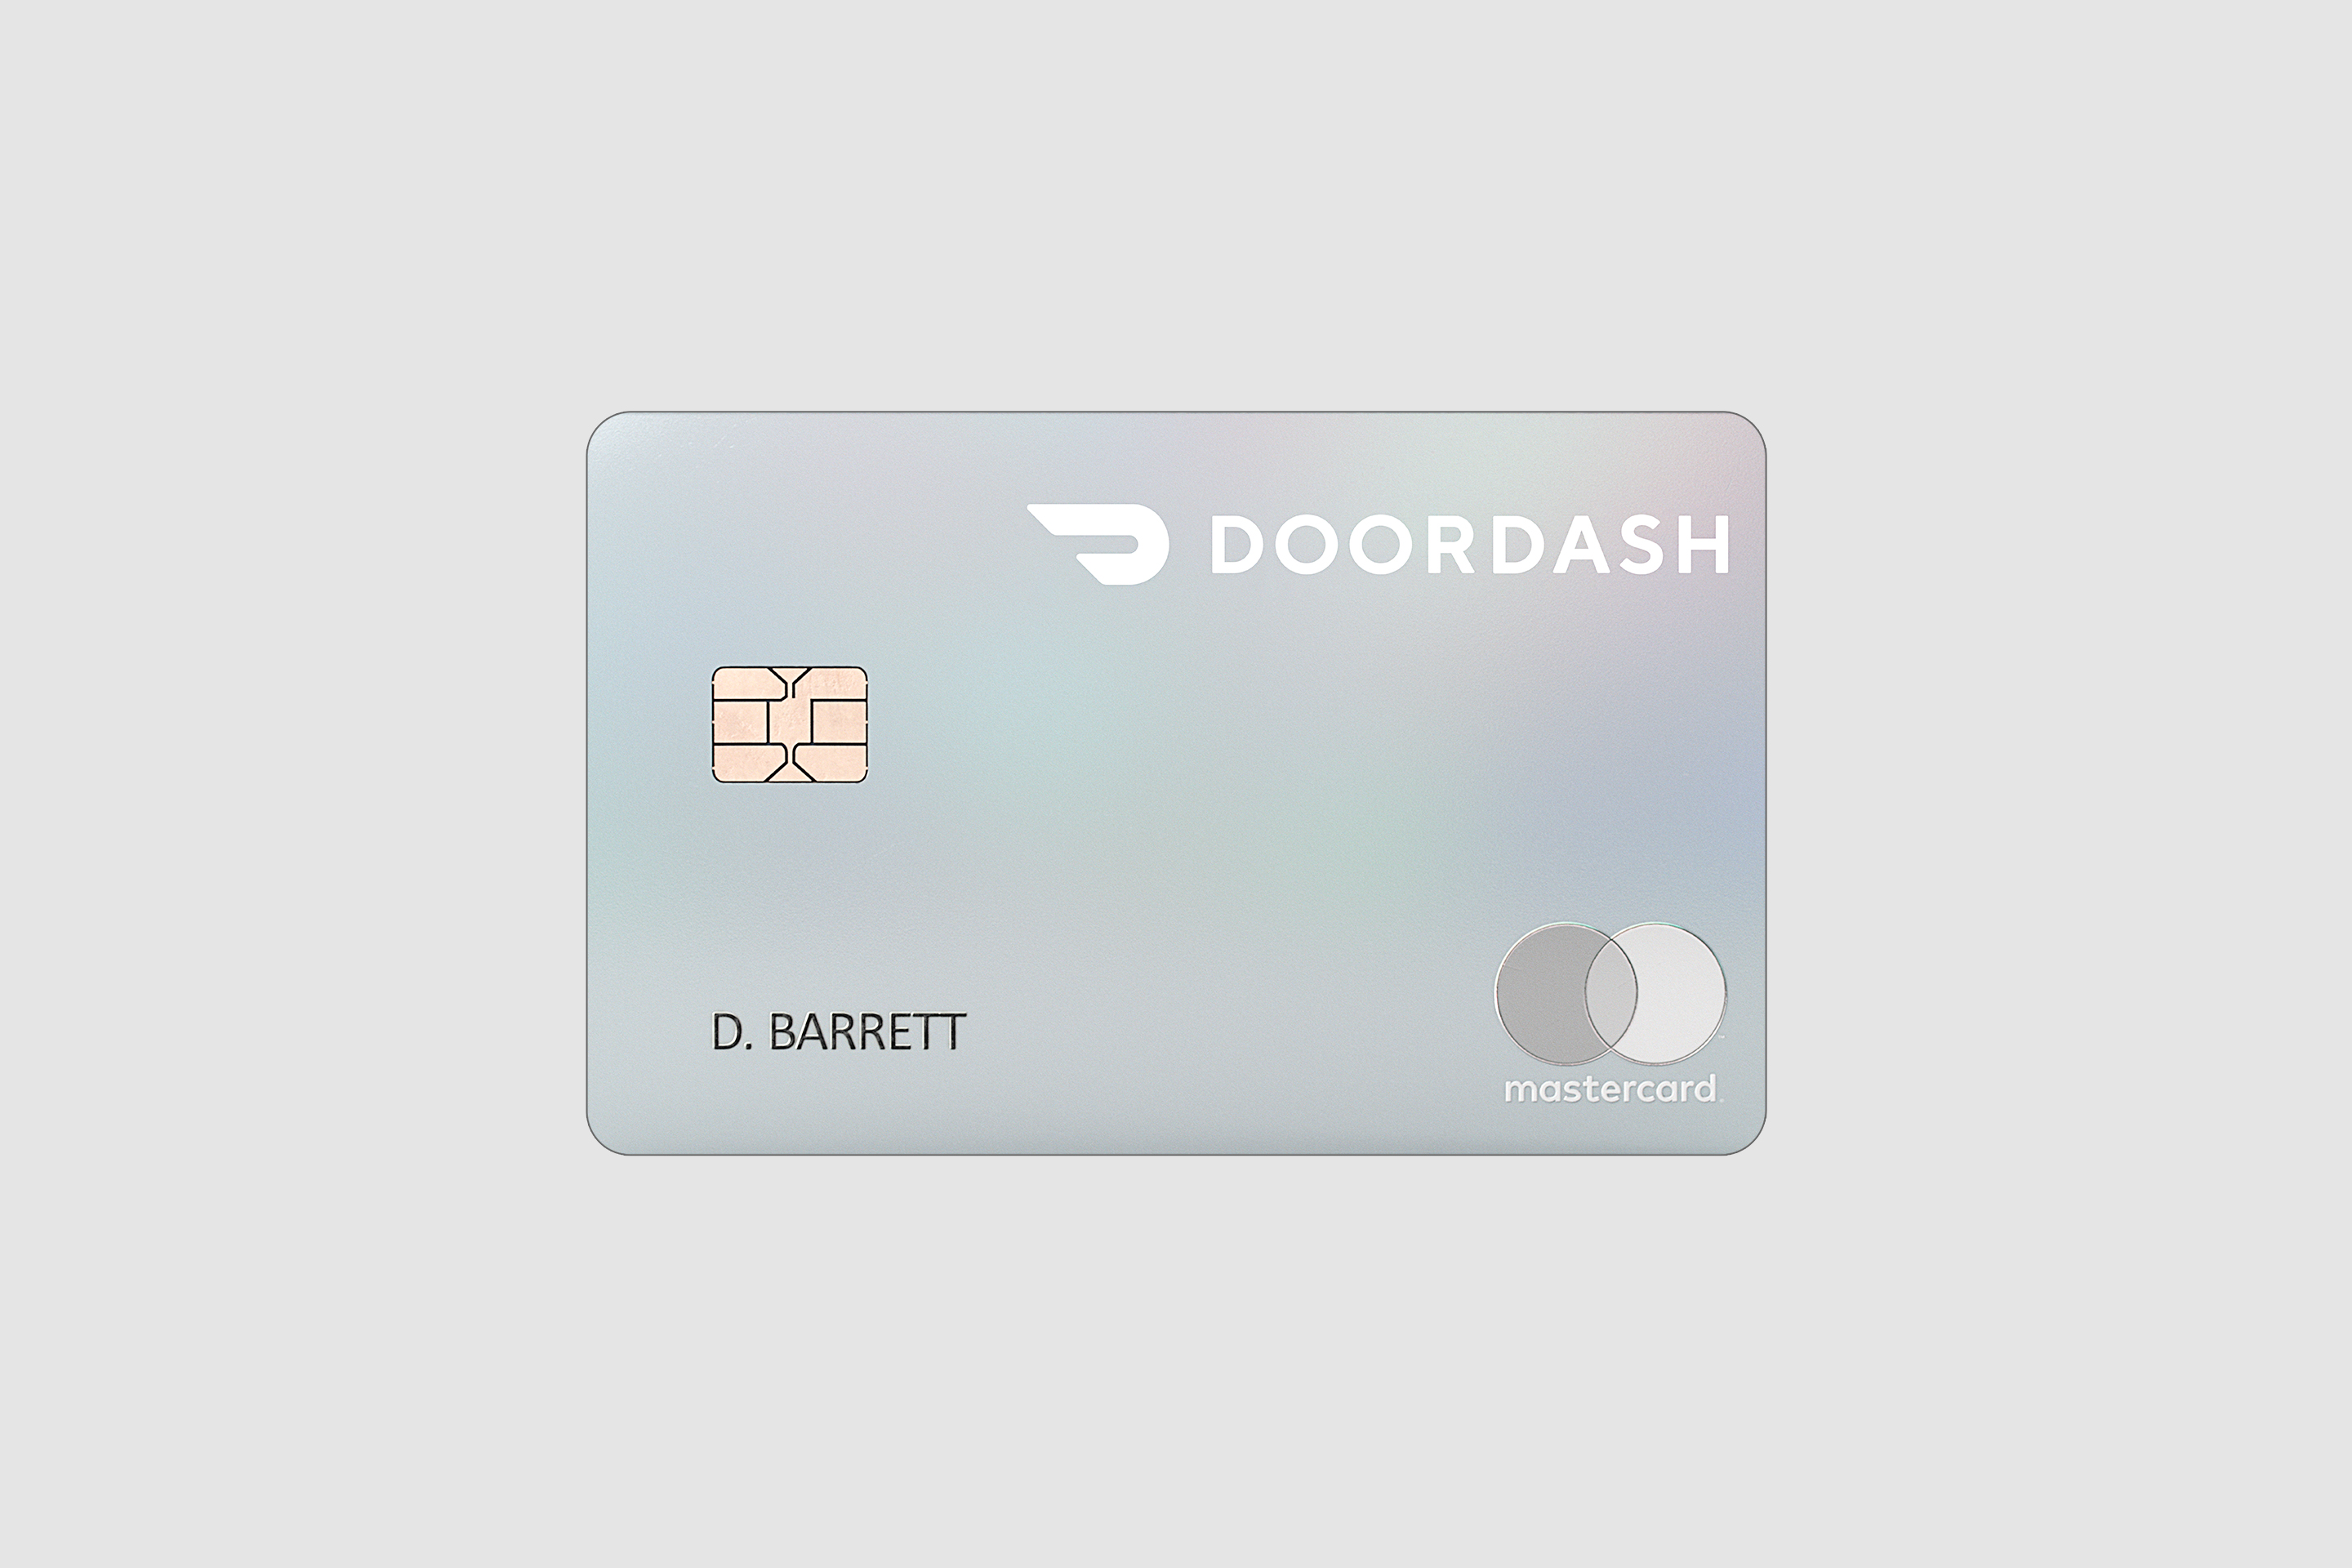 Chase Doordash Credit Card